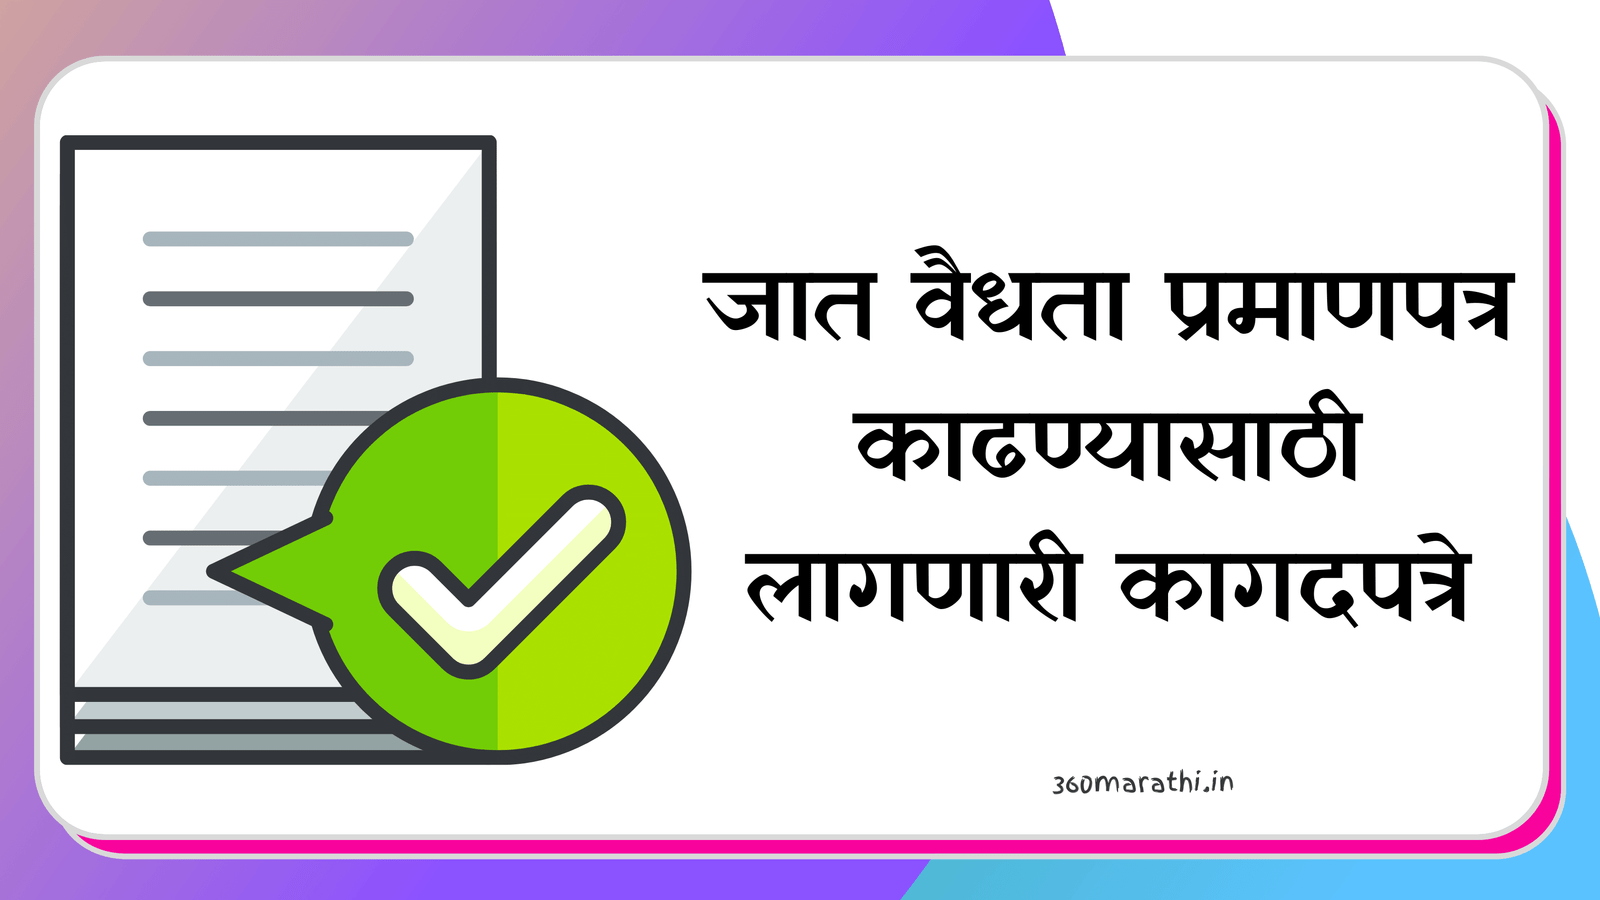 Caste Validity Documents in Marathi PDF | जात वैधता प्रमाणपत्र काढण्यासाठी लागणारी कागदपत्रे